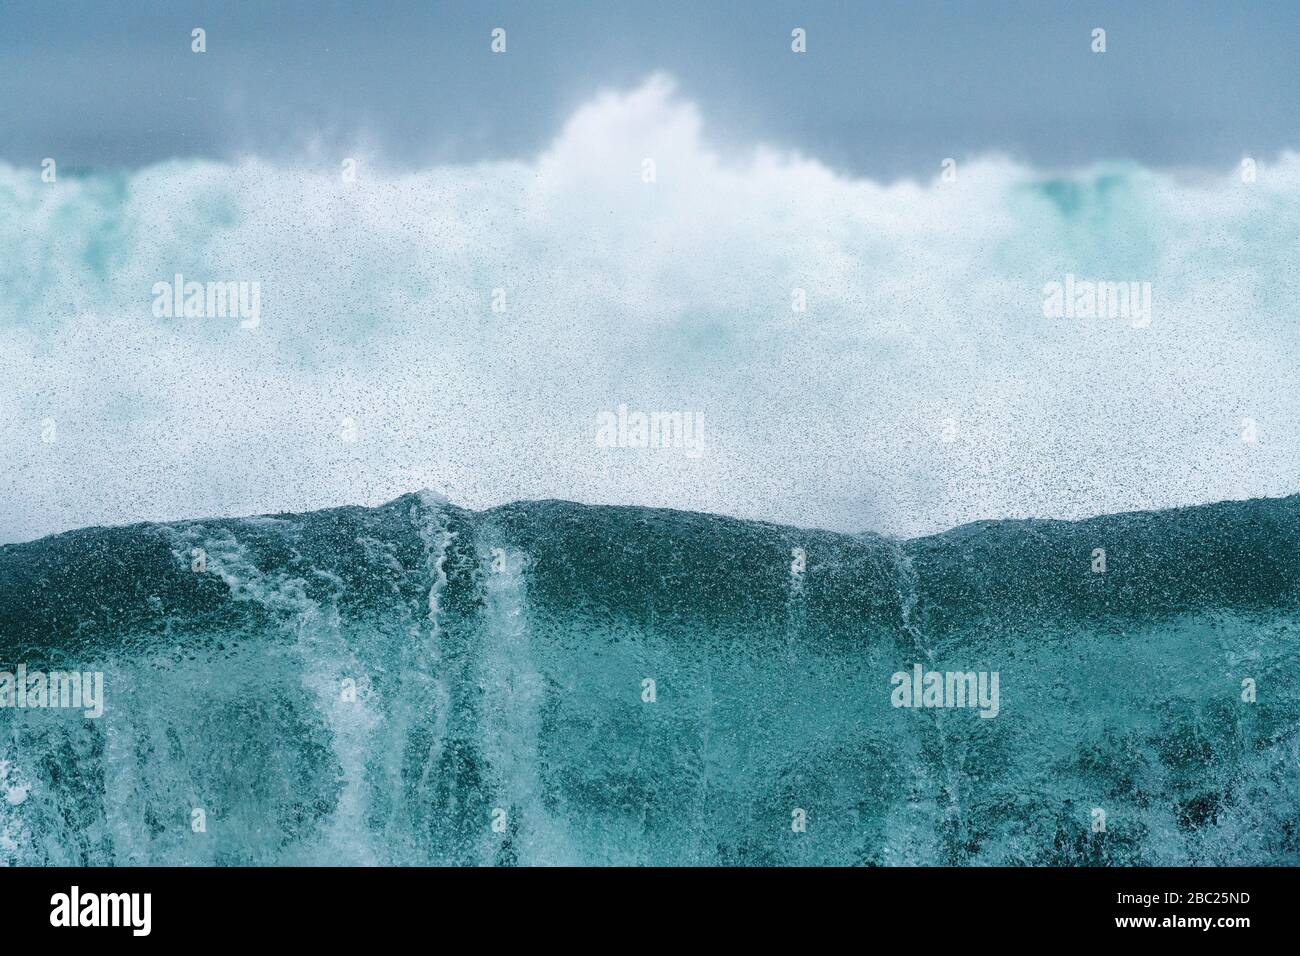 Una espectacular fotografía de primer plano del paisaje marino de una ola tubular que se estrellaba, con espuma blanca en el fondo, tomada en Port Nolloth, Sudáfrica. Foto de stock